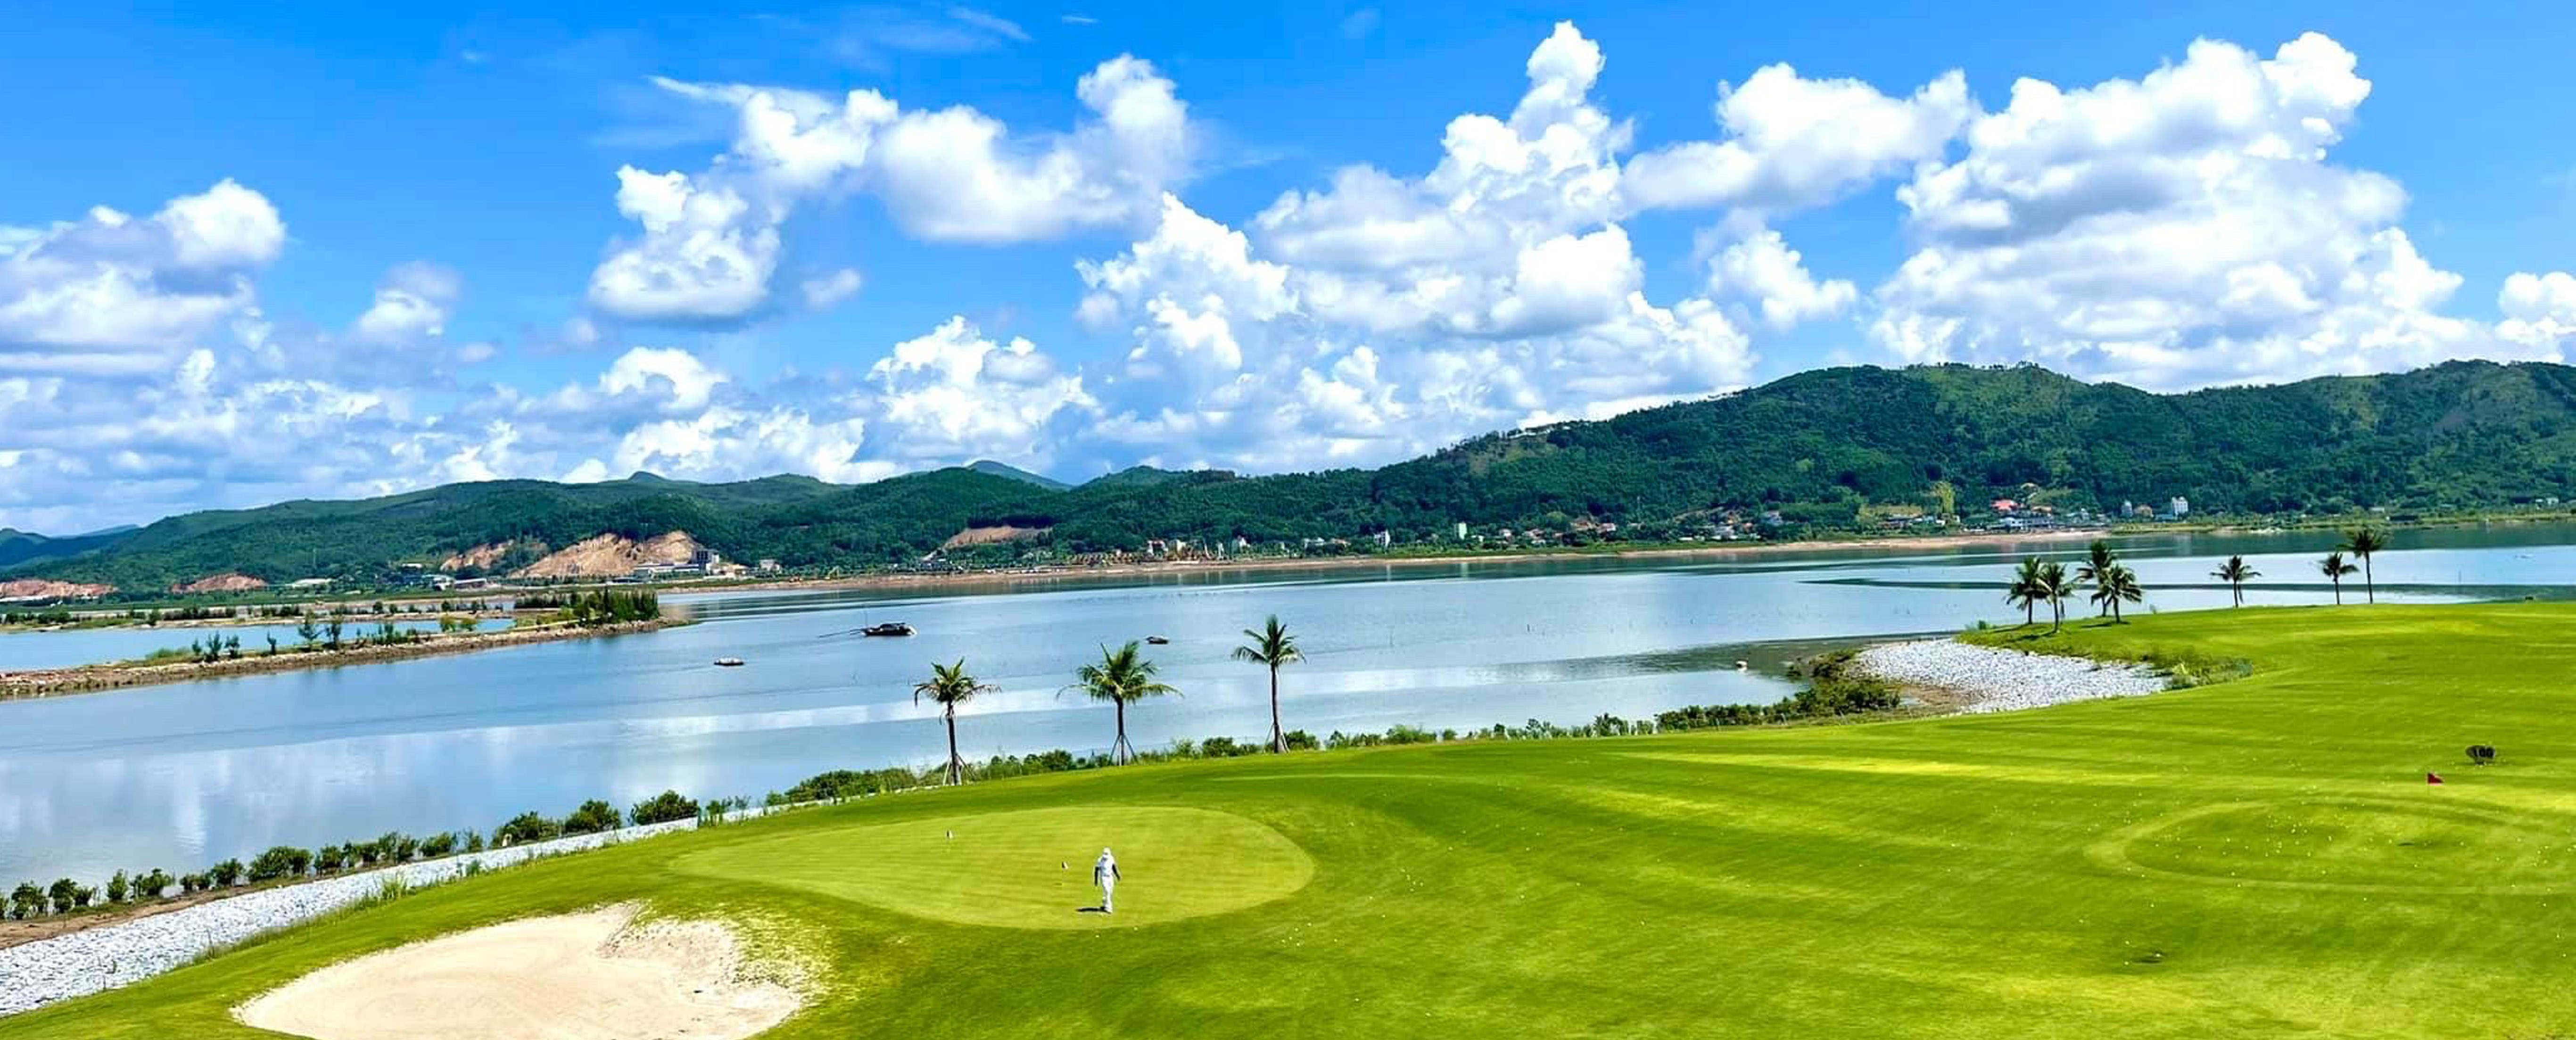 Sân tập golf Tuần Châu tại Quảng Ninh